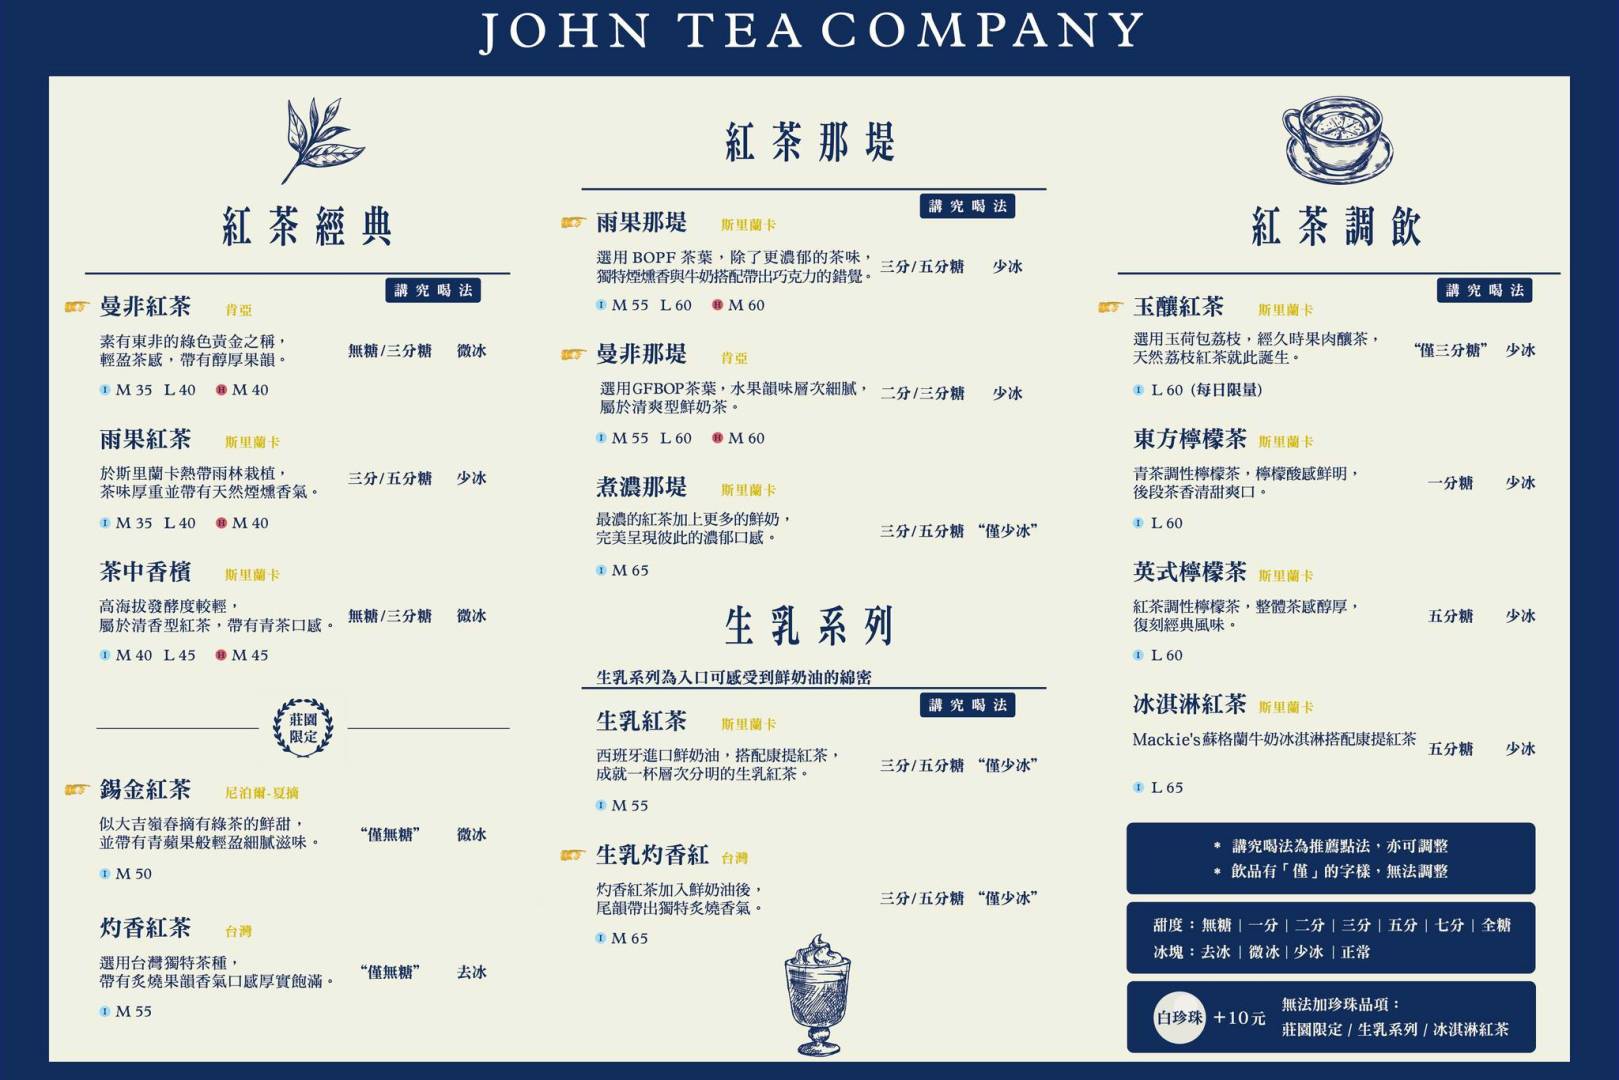 約翰紅茶公司, 約翰紅茶公司菜單, 約翰紅茶公司推薦, 飲料推薦, 約翰紅茶公司 南勢角